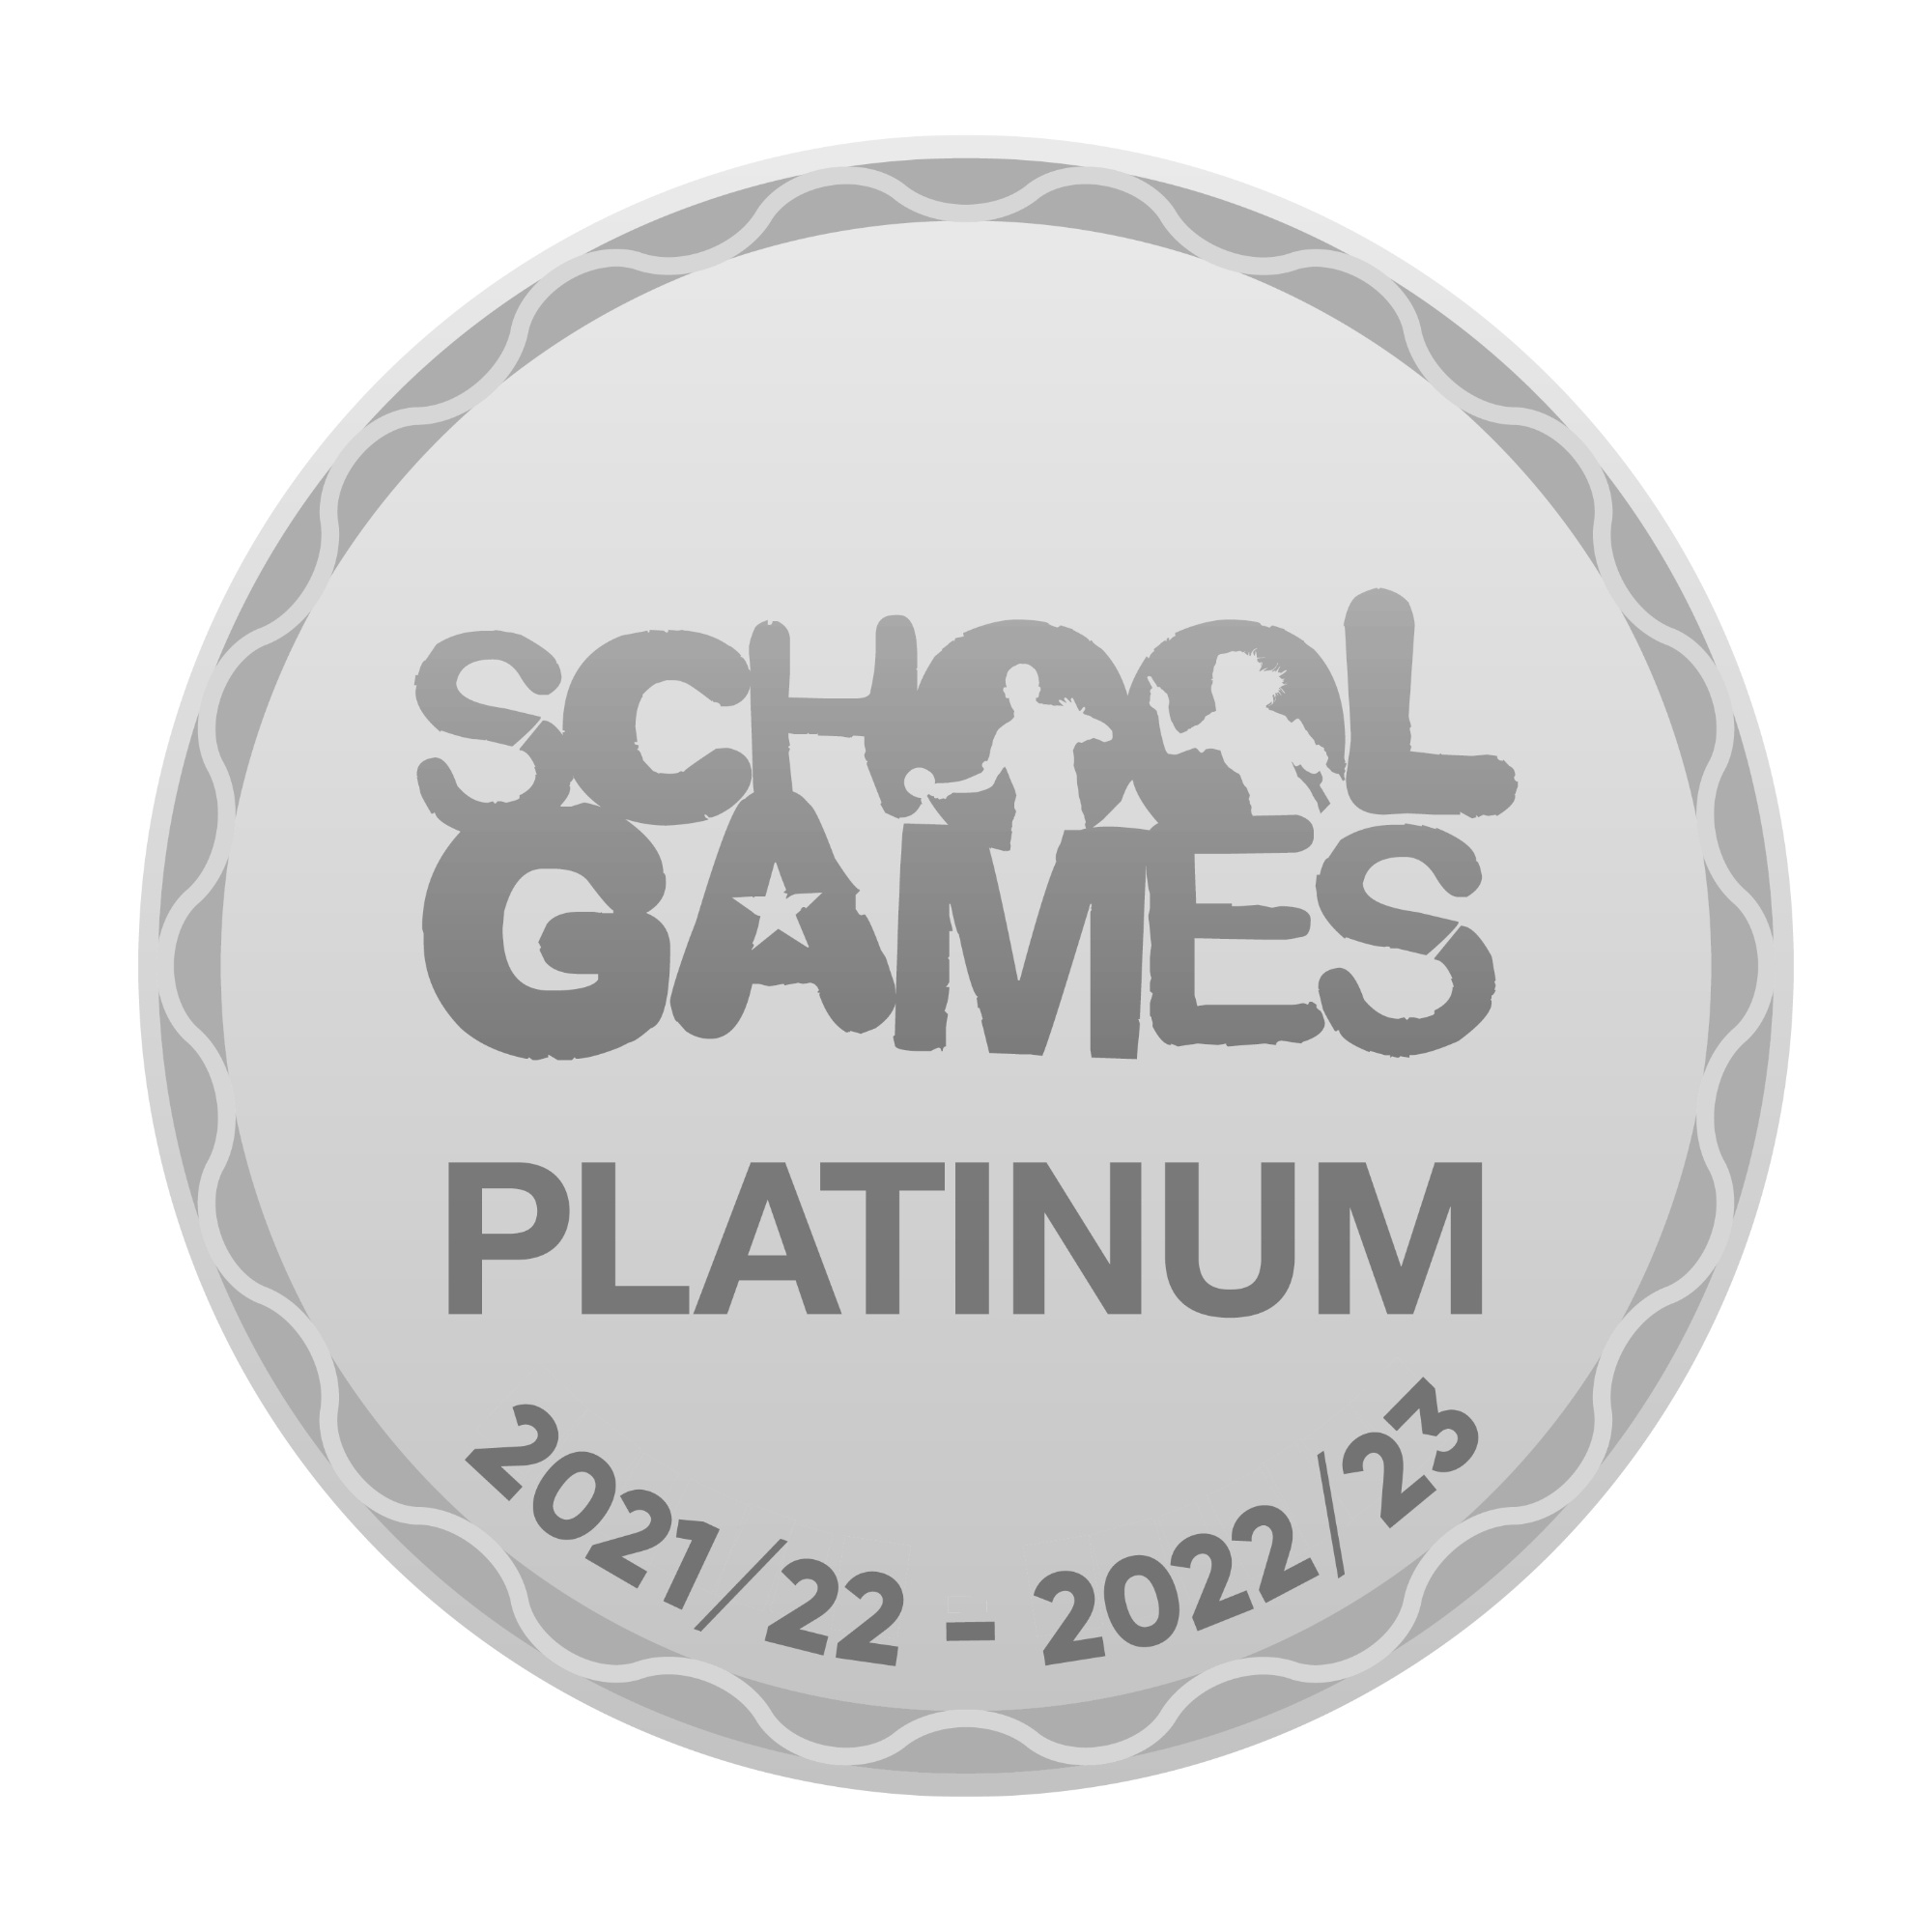 Platinum School Games